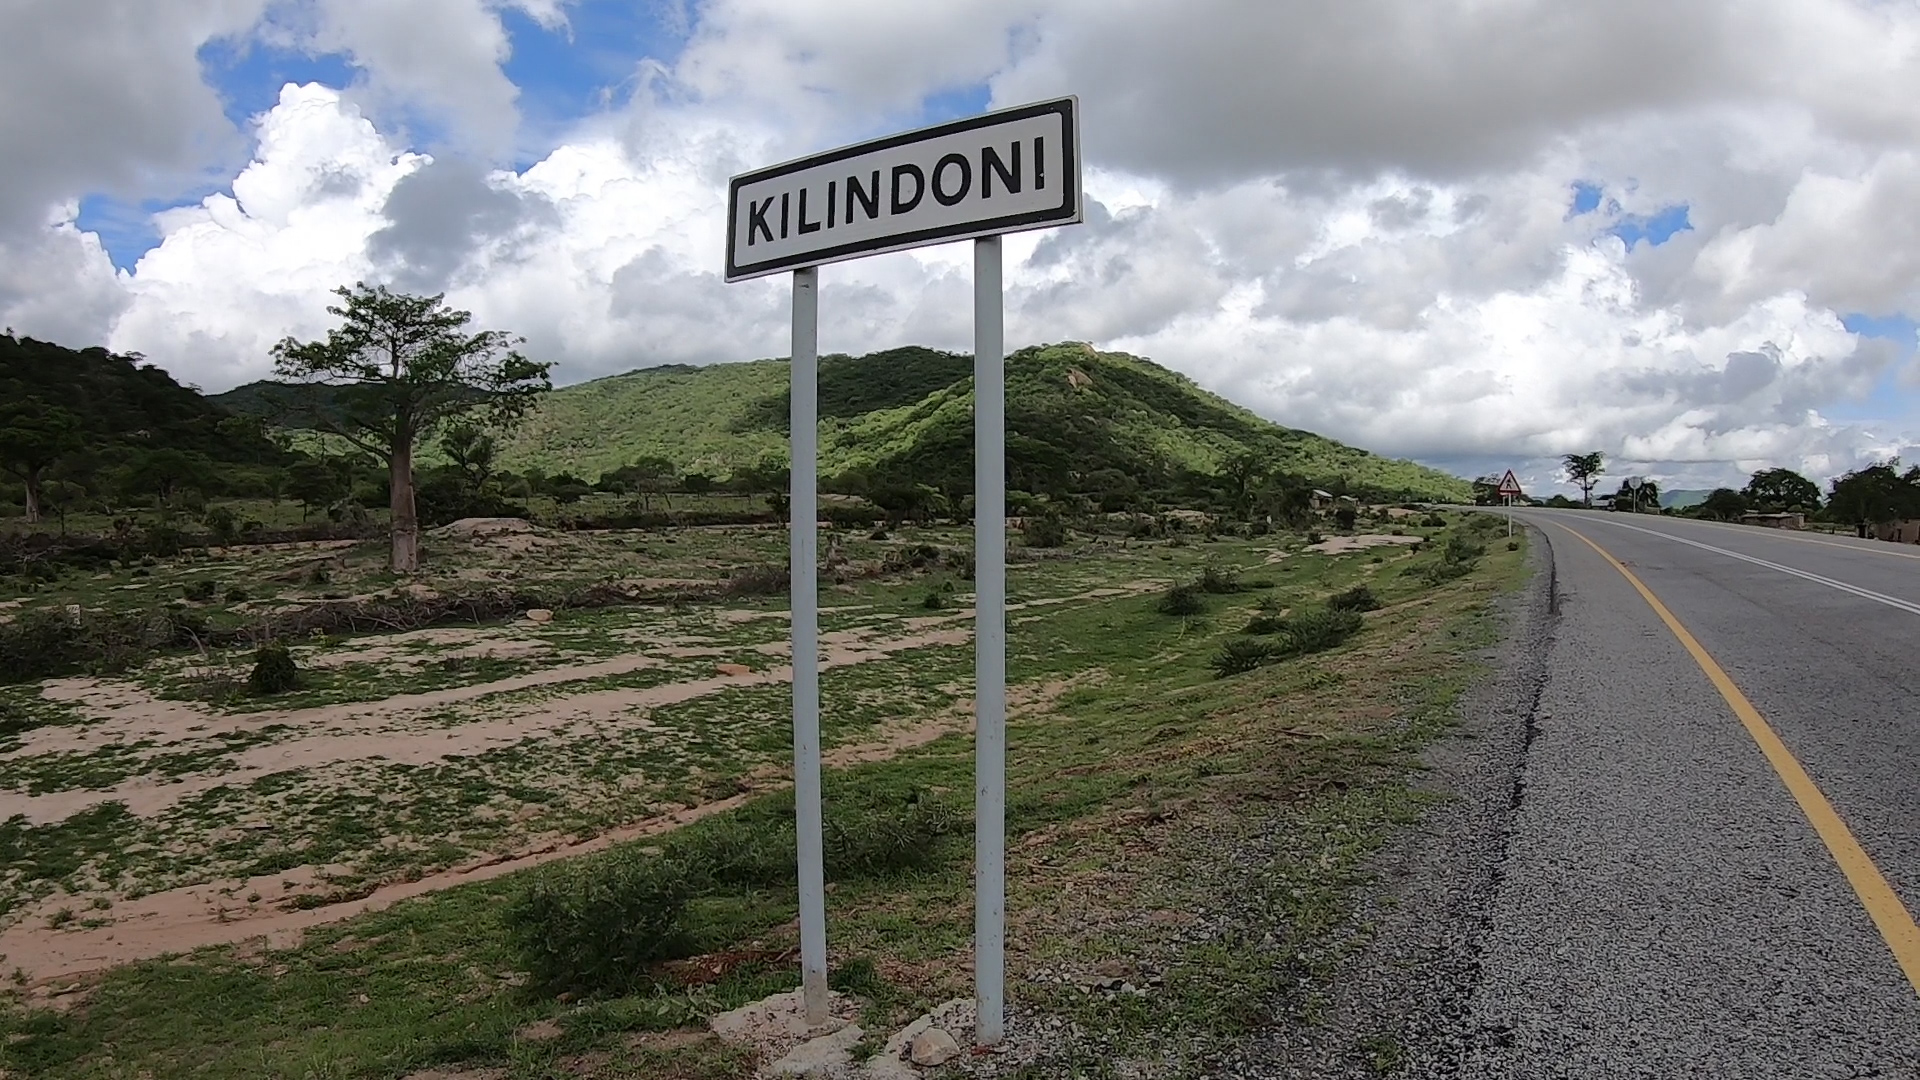 KILINDONIの標識